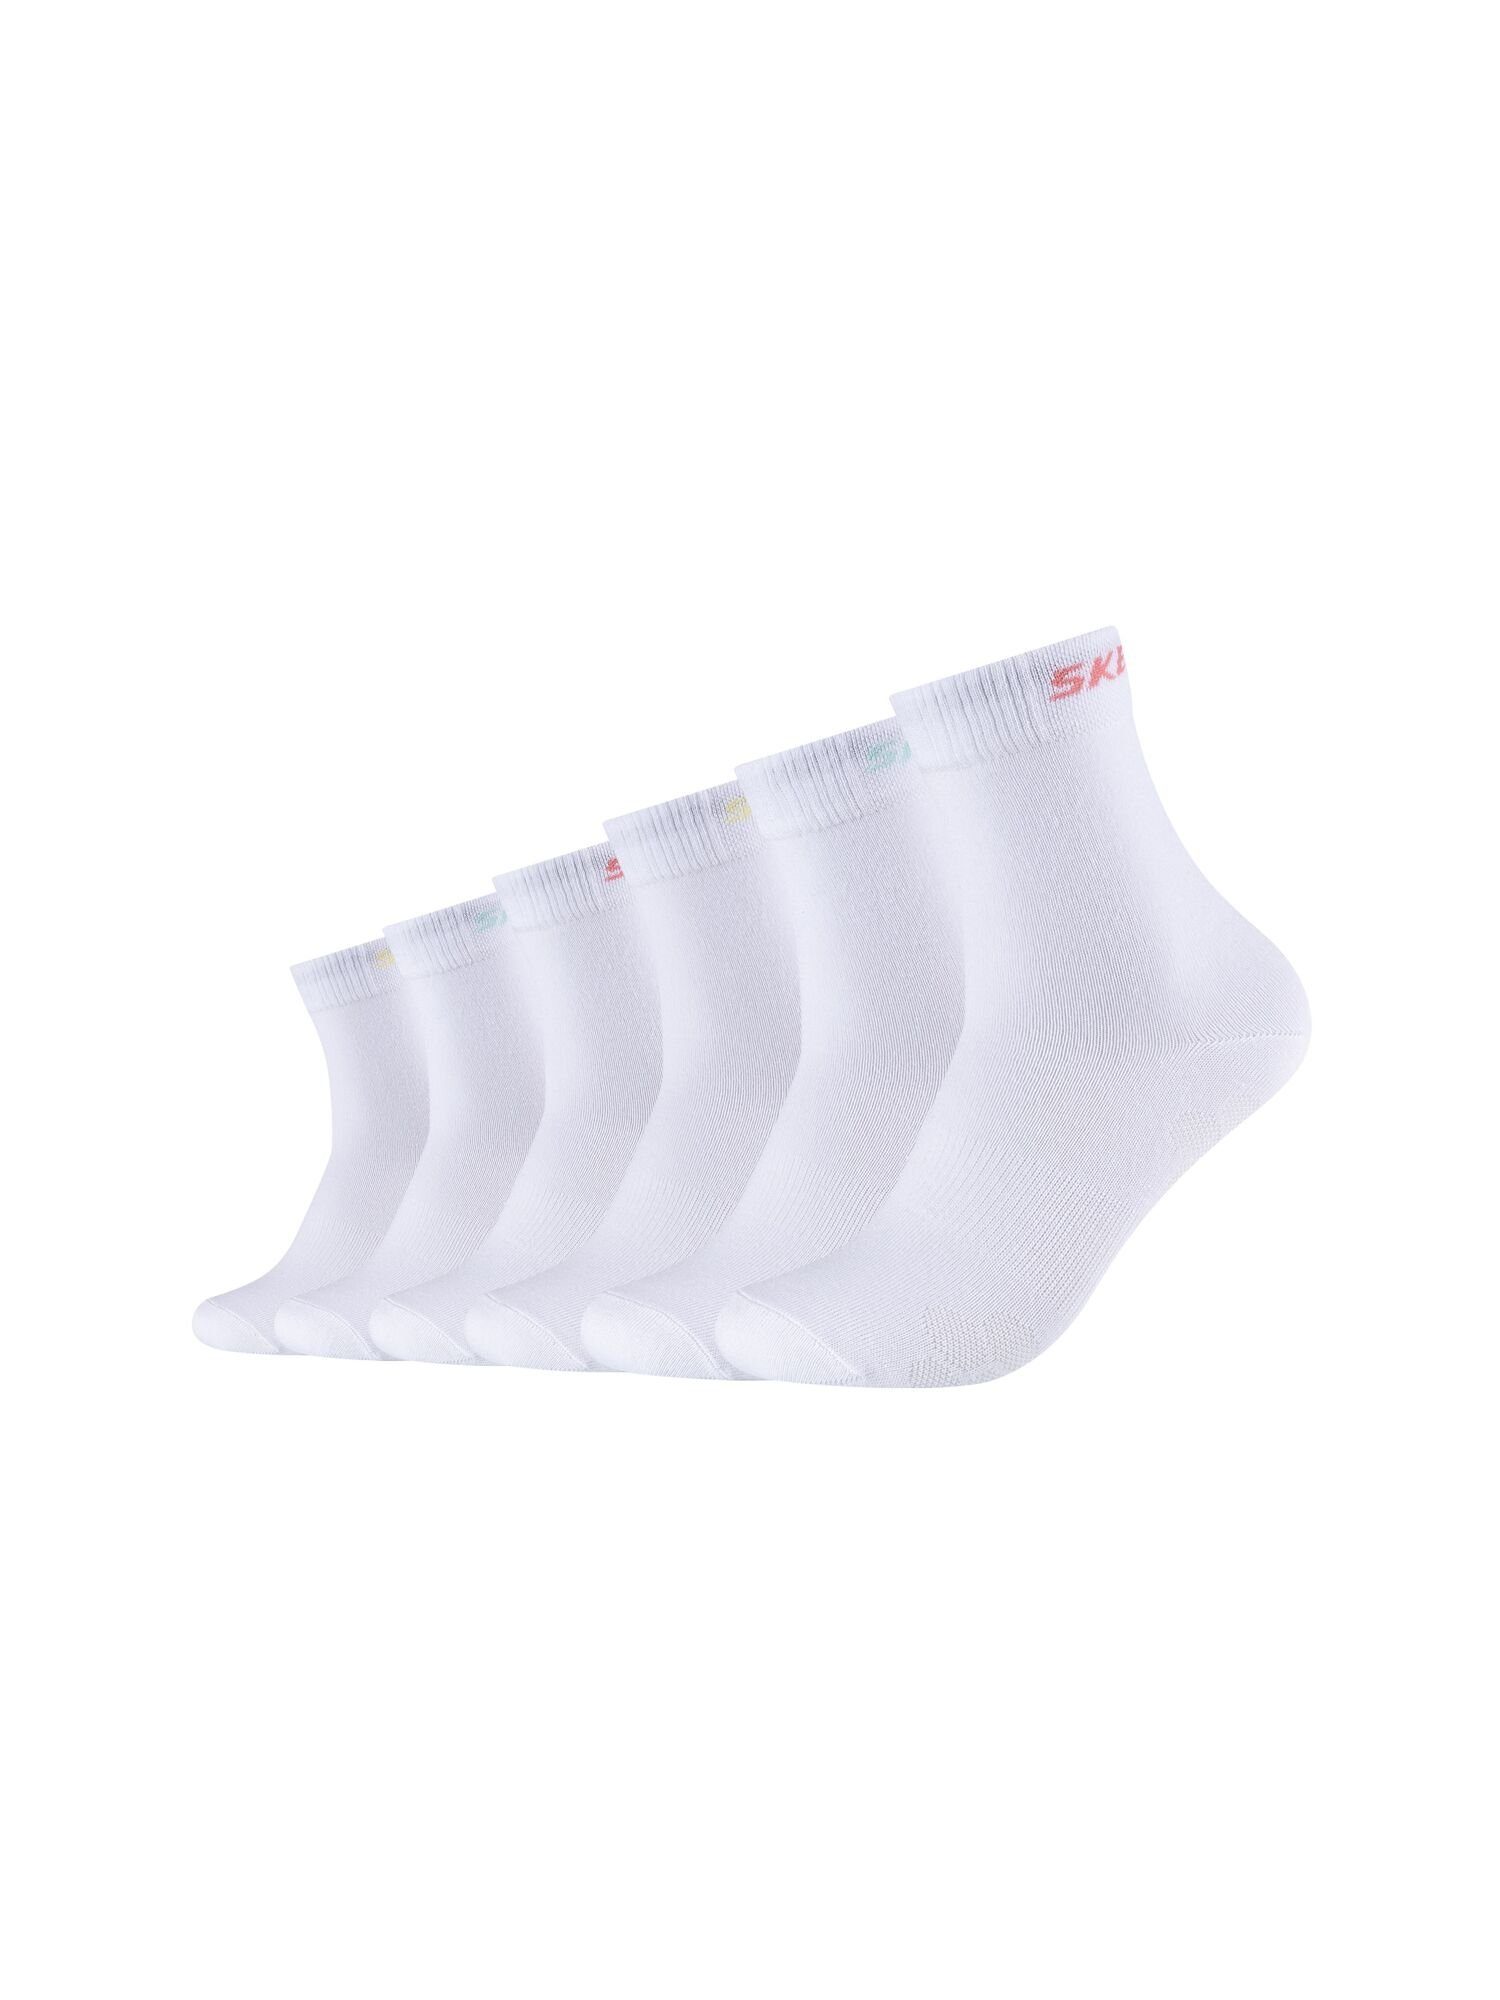 Skechers Socken Socken 6er Pack white